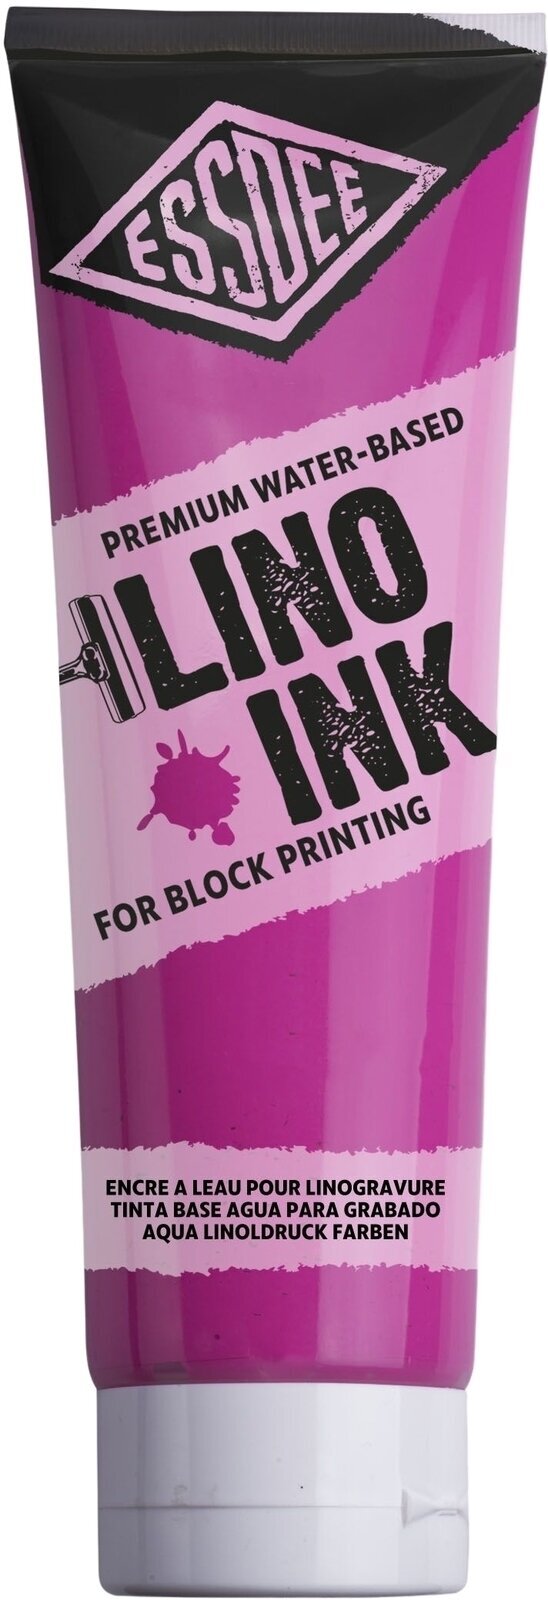 Боя за линогравюра Essdee Block Printing Ink Боя за линогравюра Fluorescent Pink 300 ml